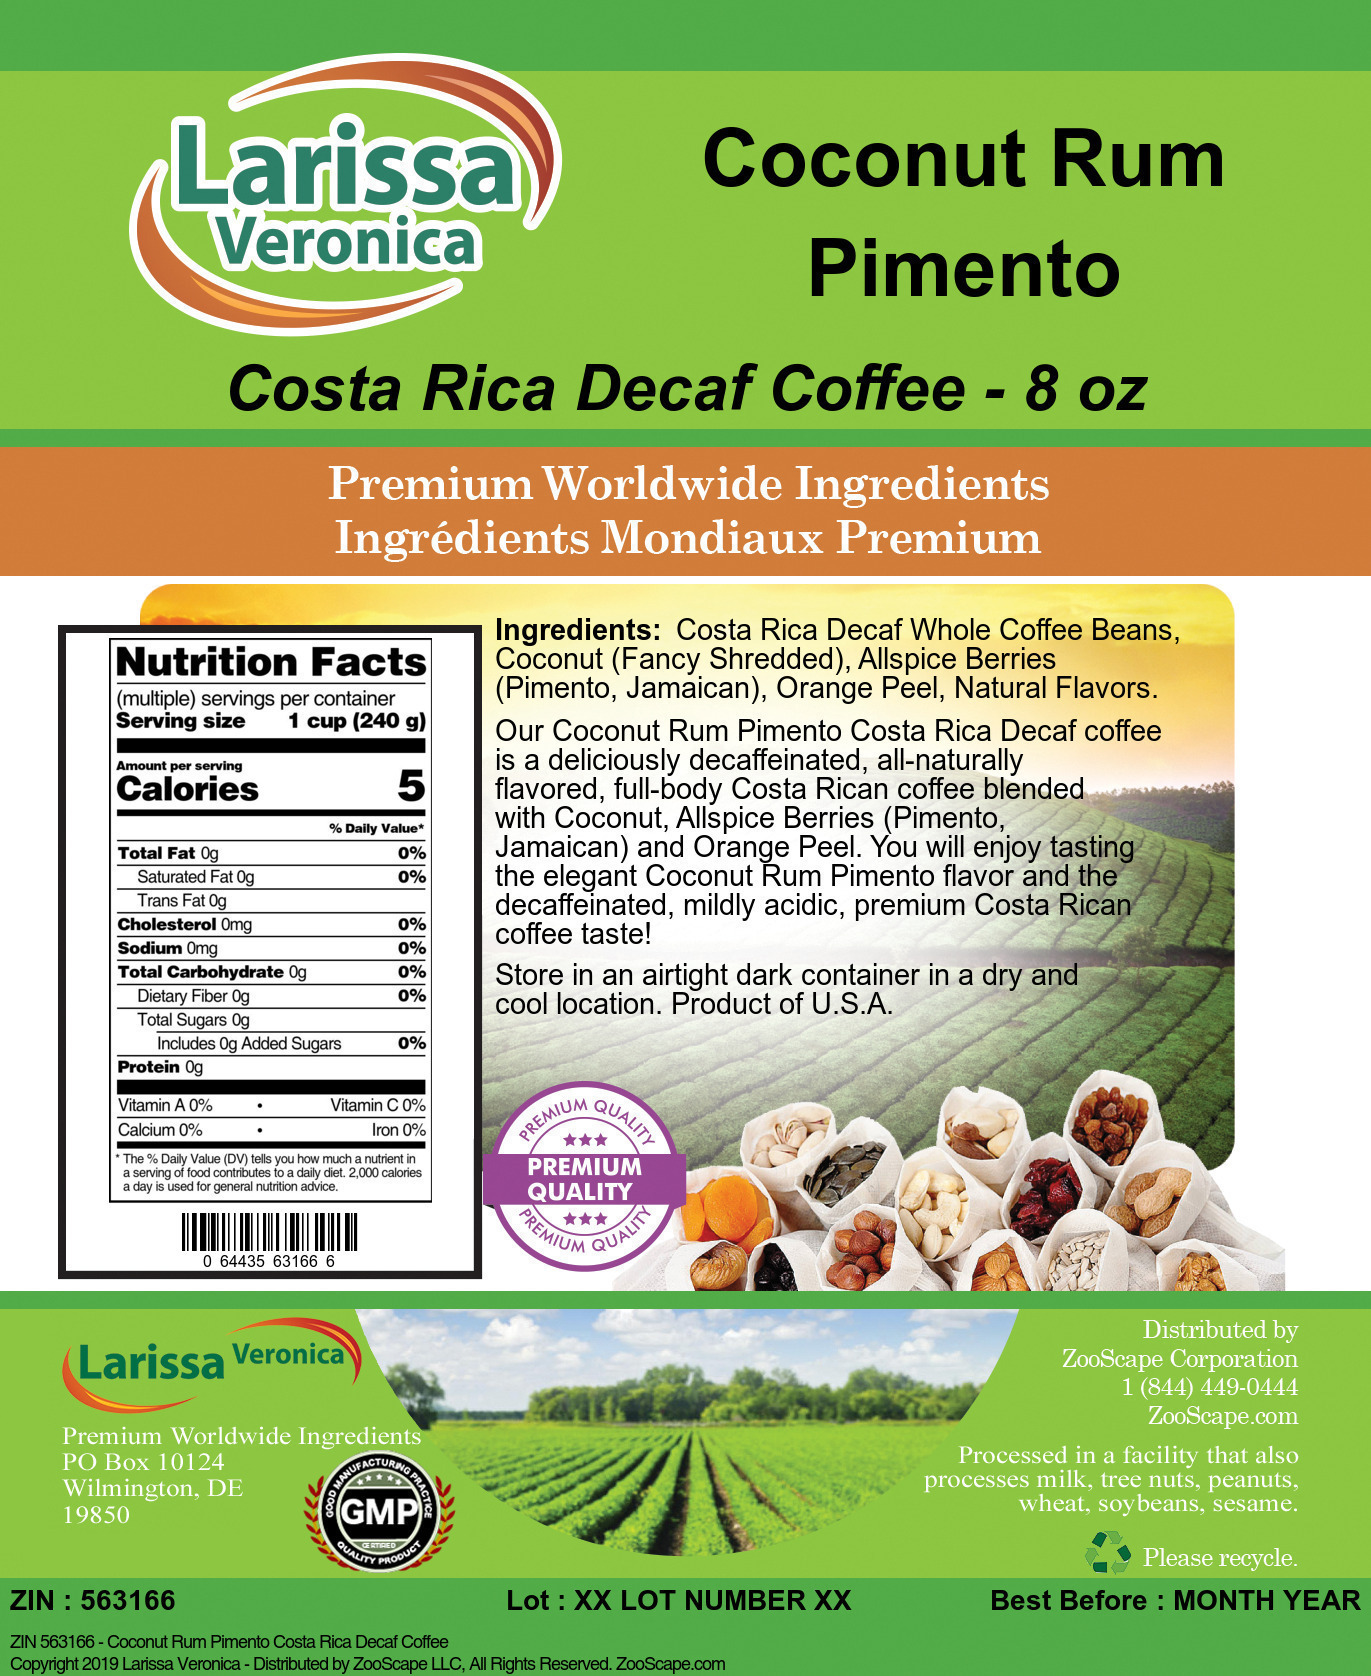 Coconut Rum Pimento Costa Rica Decaf Coffee - Label